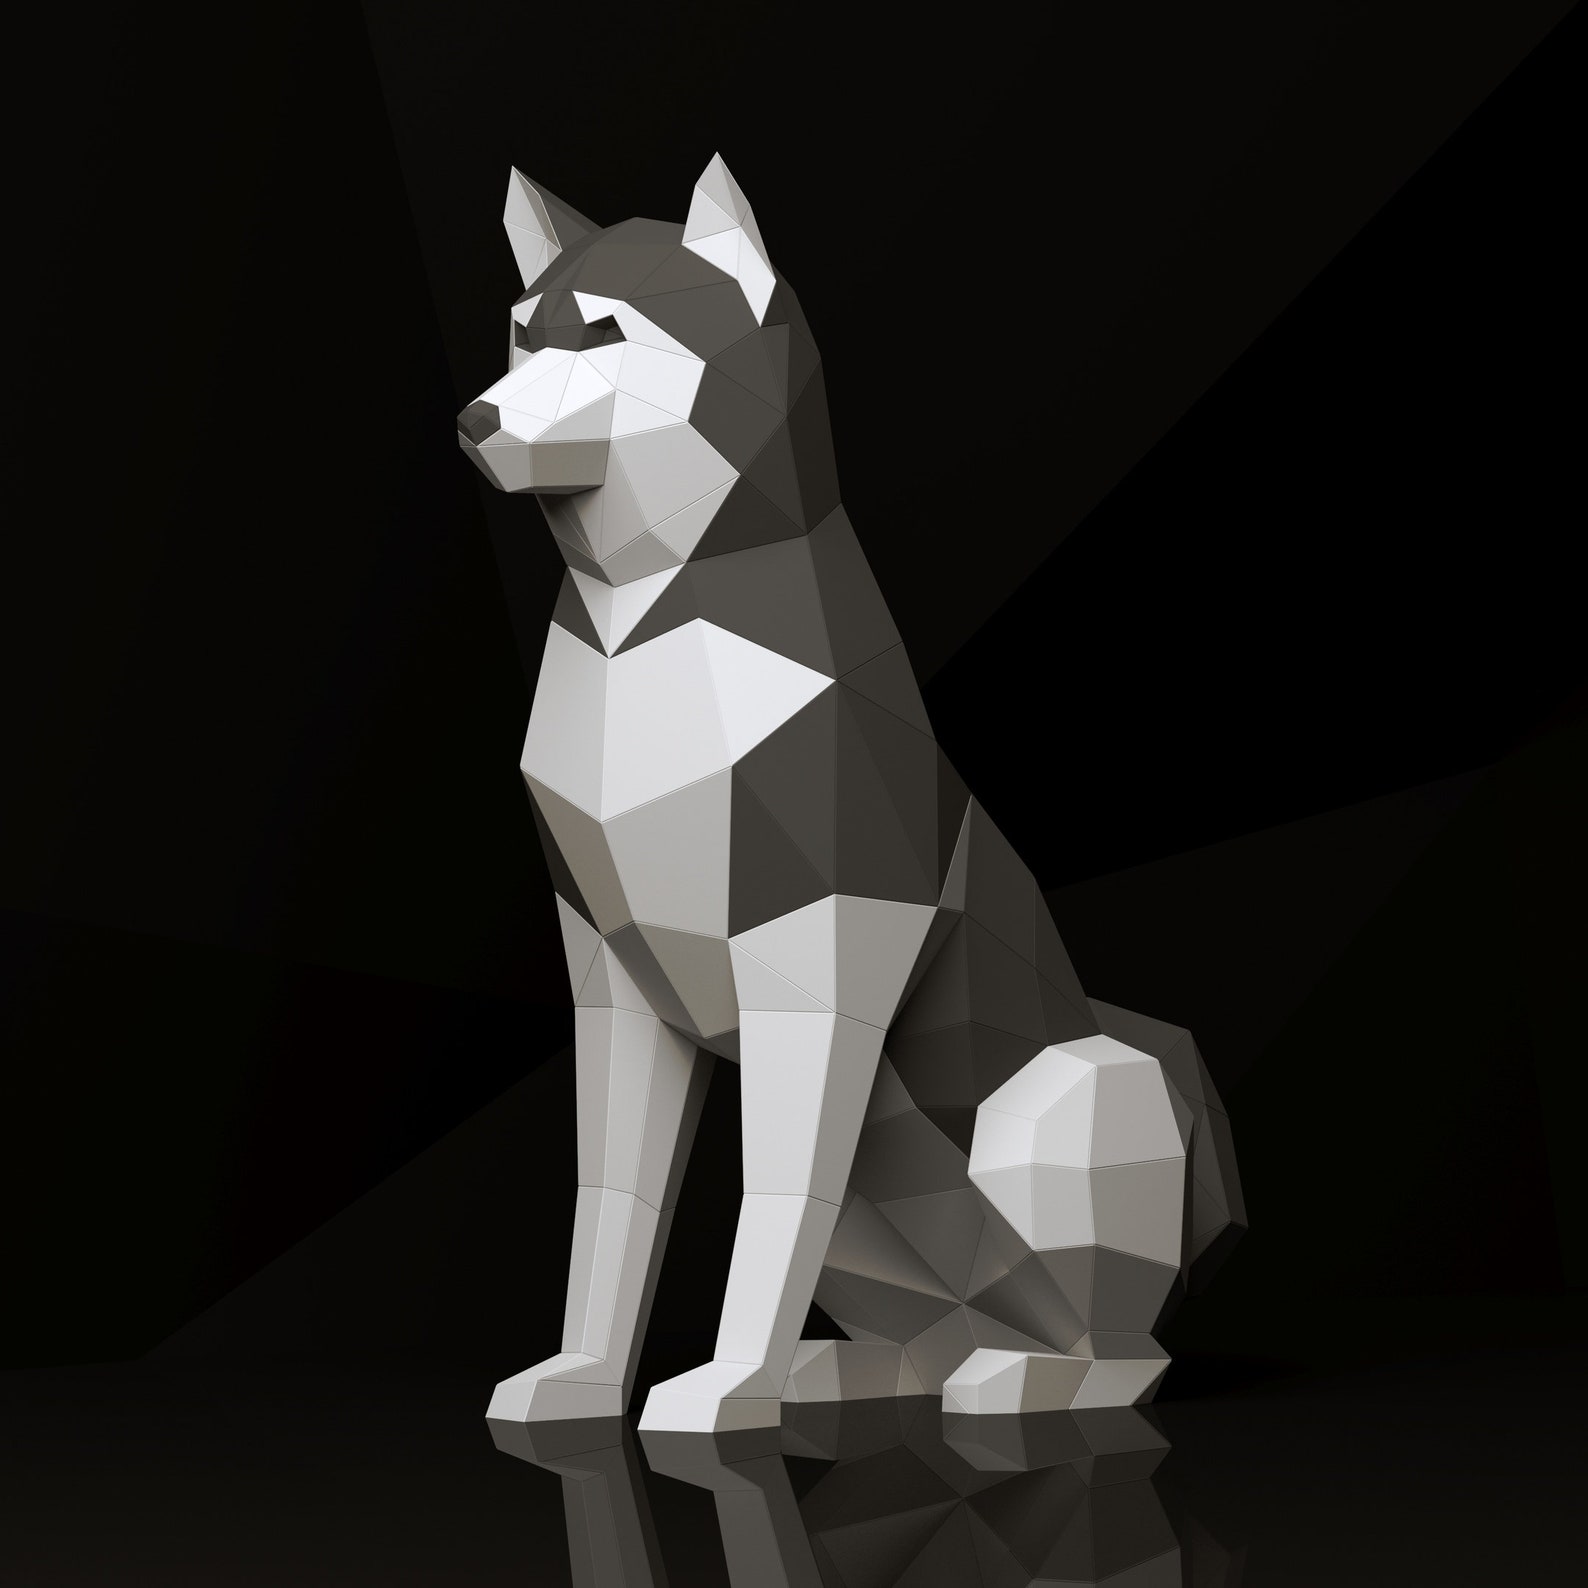 Husky Papercraft Dog 3D SVG DXF Pdf DIY low poly paper | Etsy